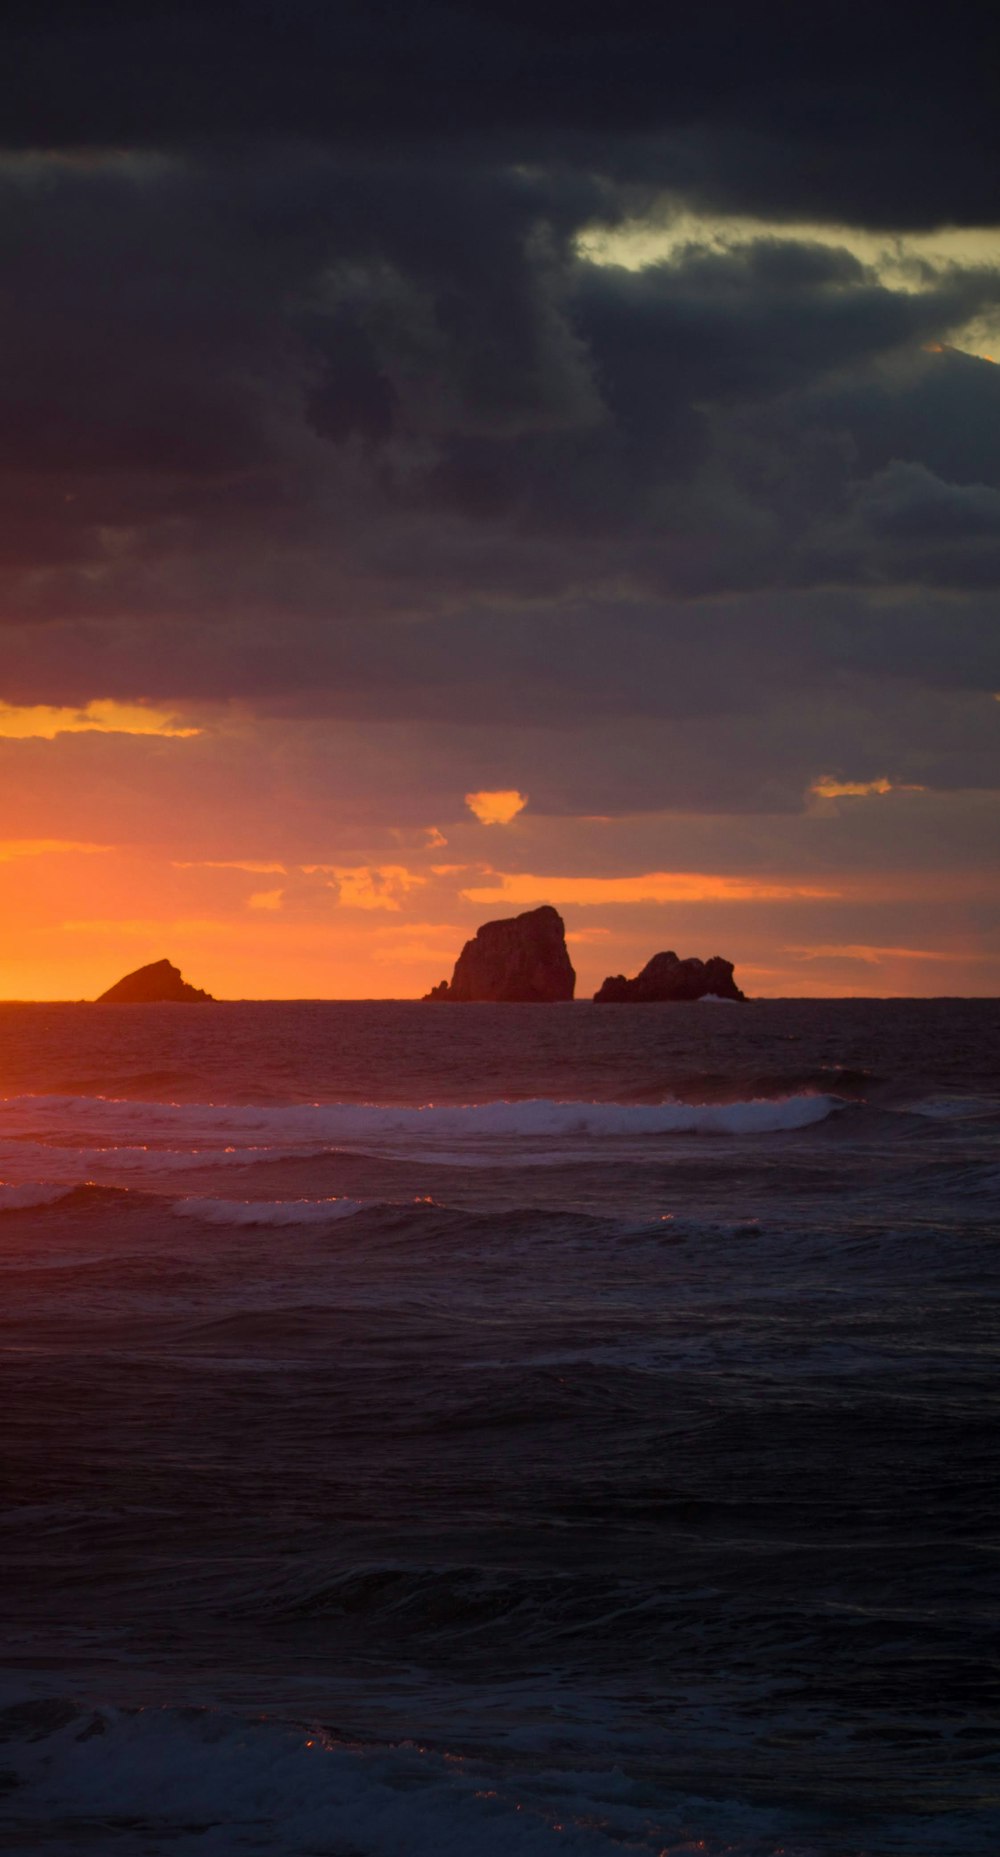 Braune Felsformation auf See bei Sonnenuntergang